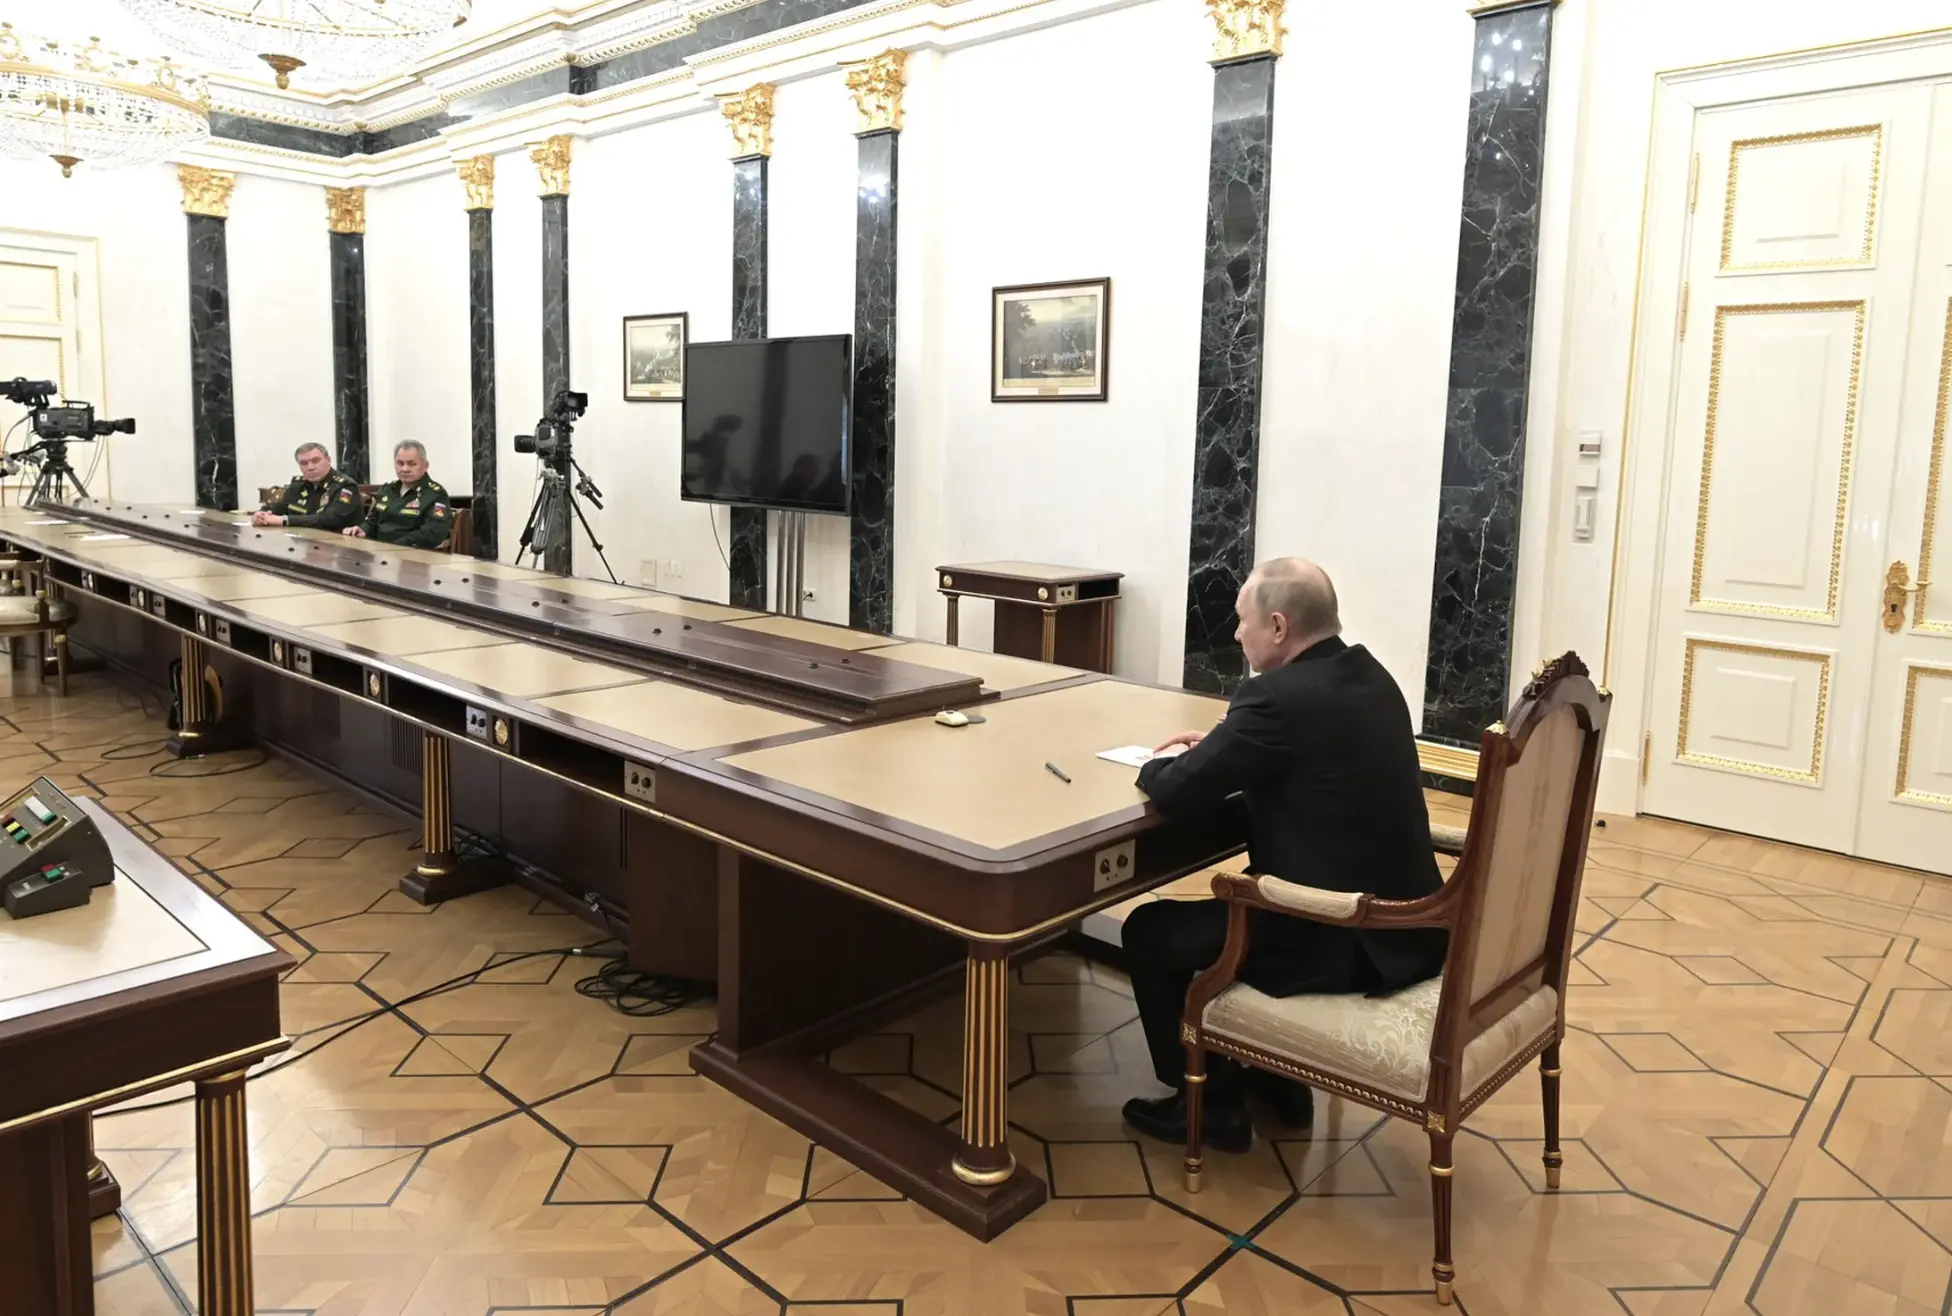 Putin sits at table